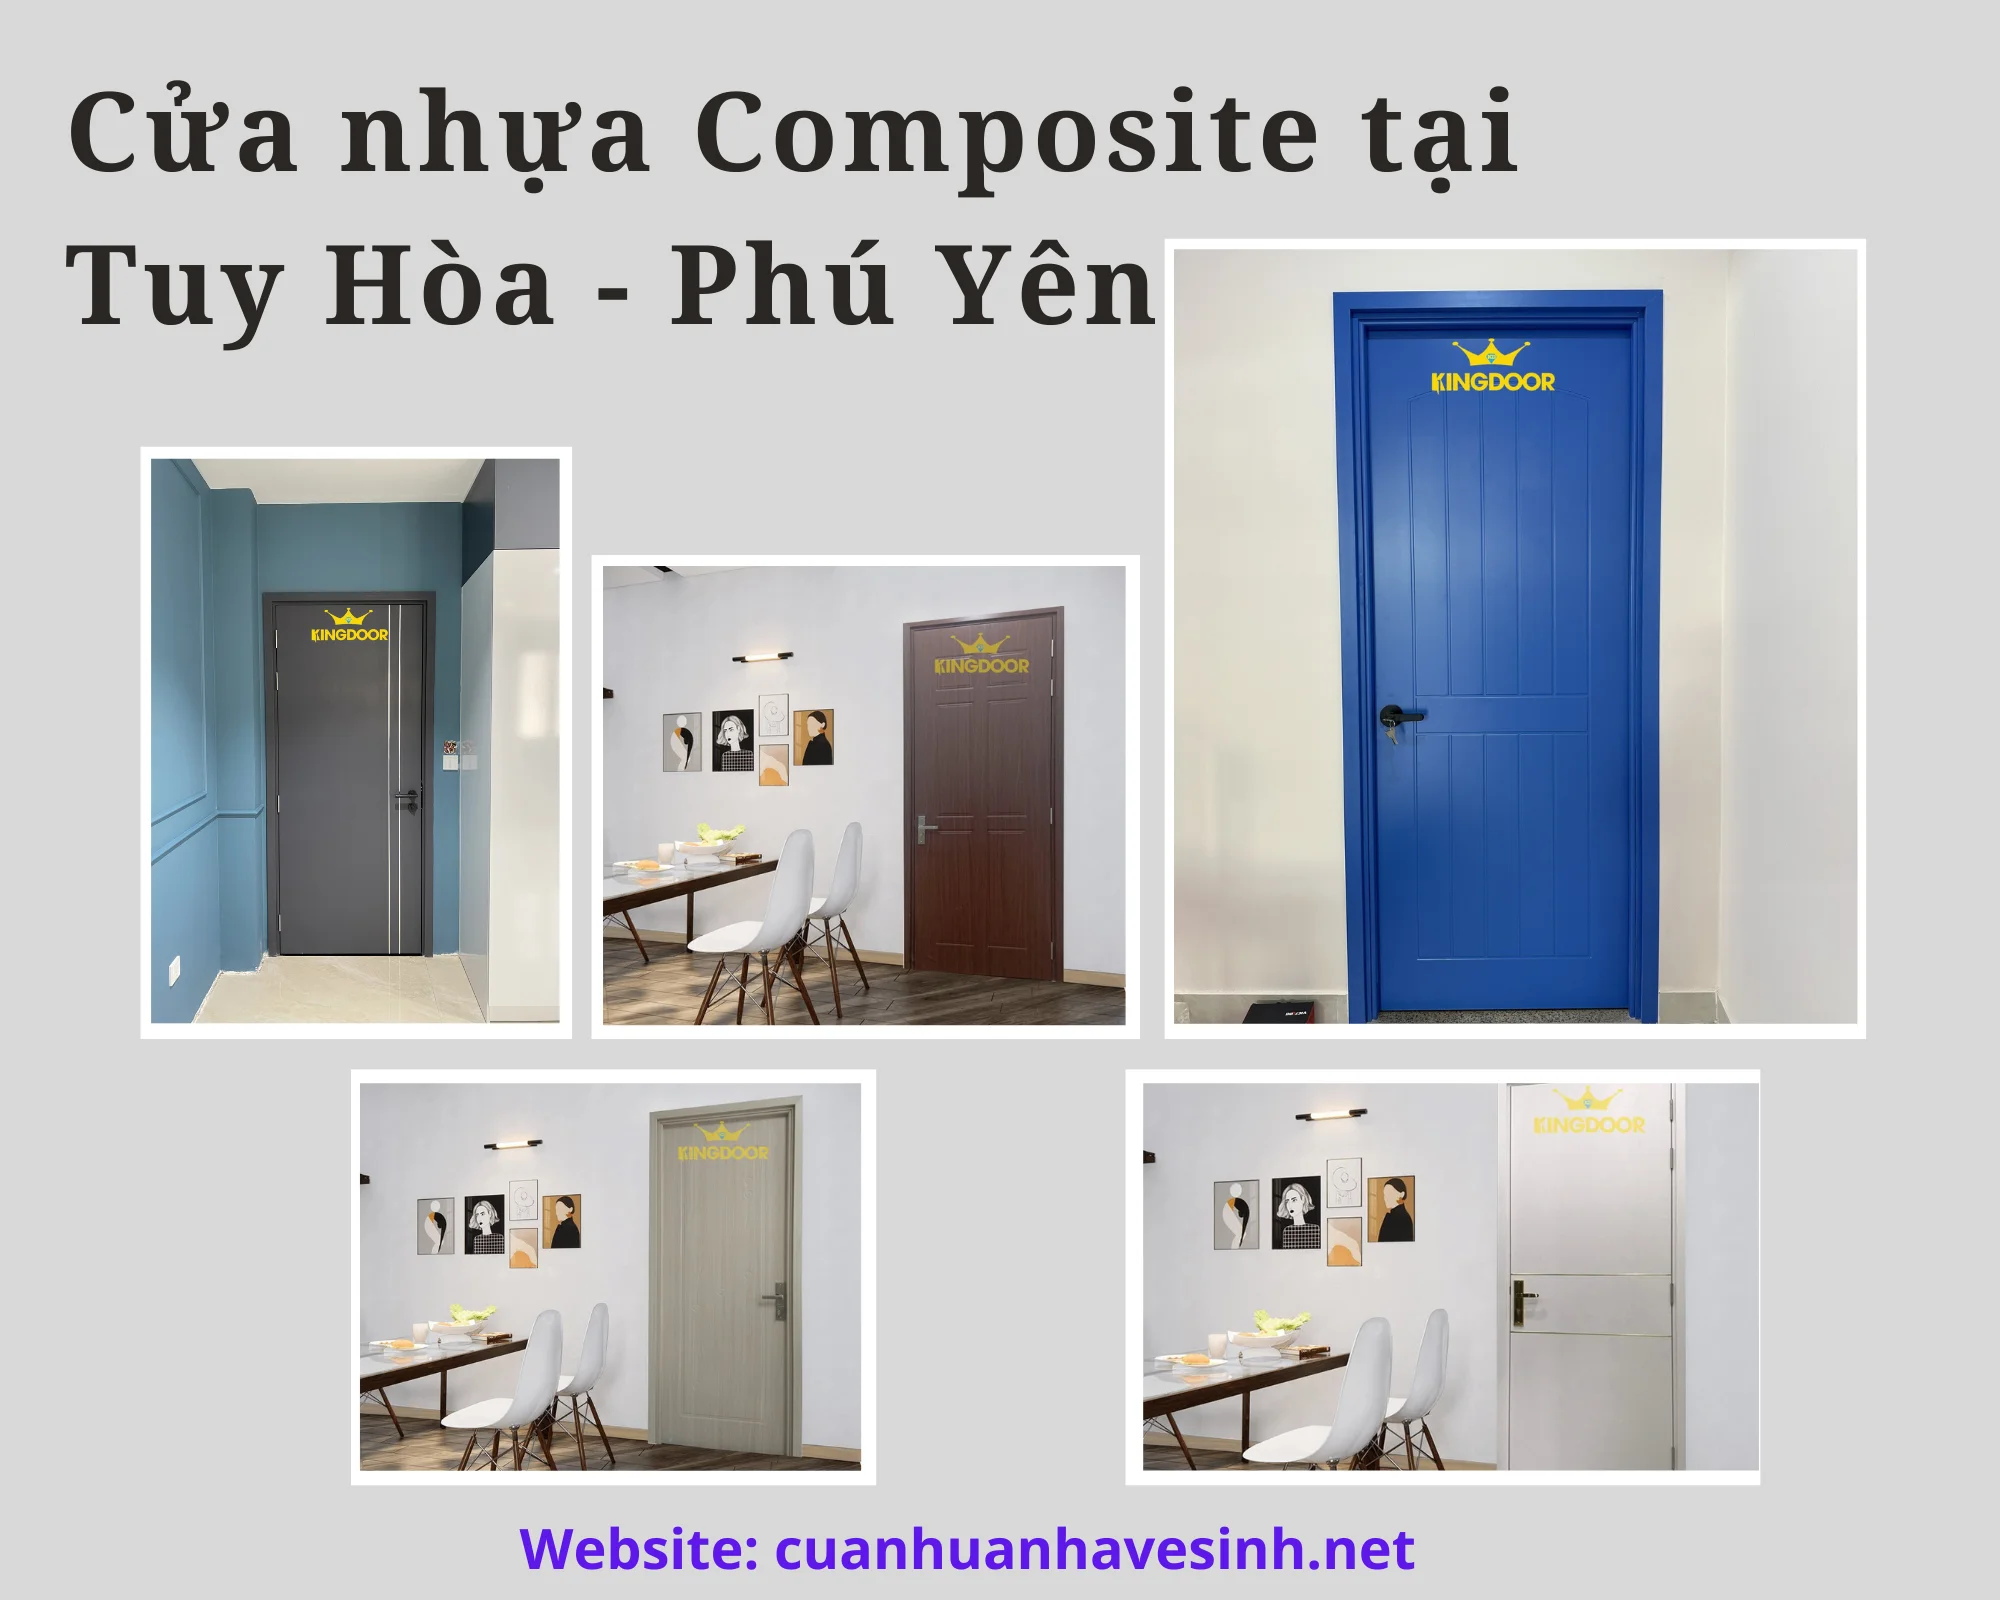 cua-nhua-composite-tai-tay-hoa-phu-yen